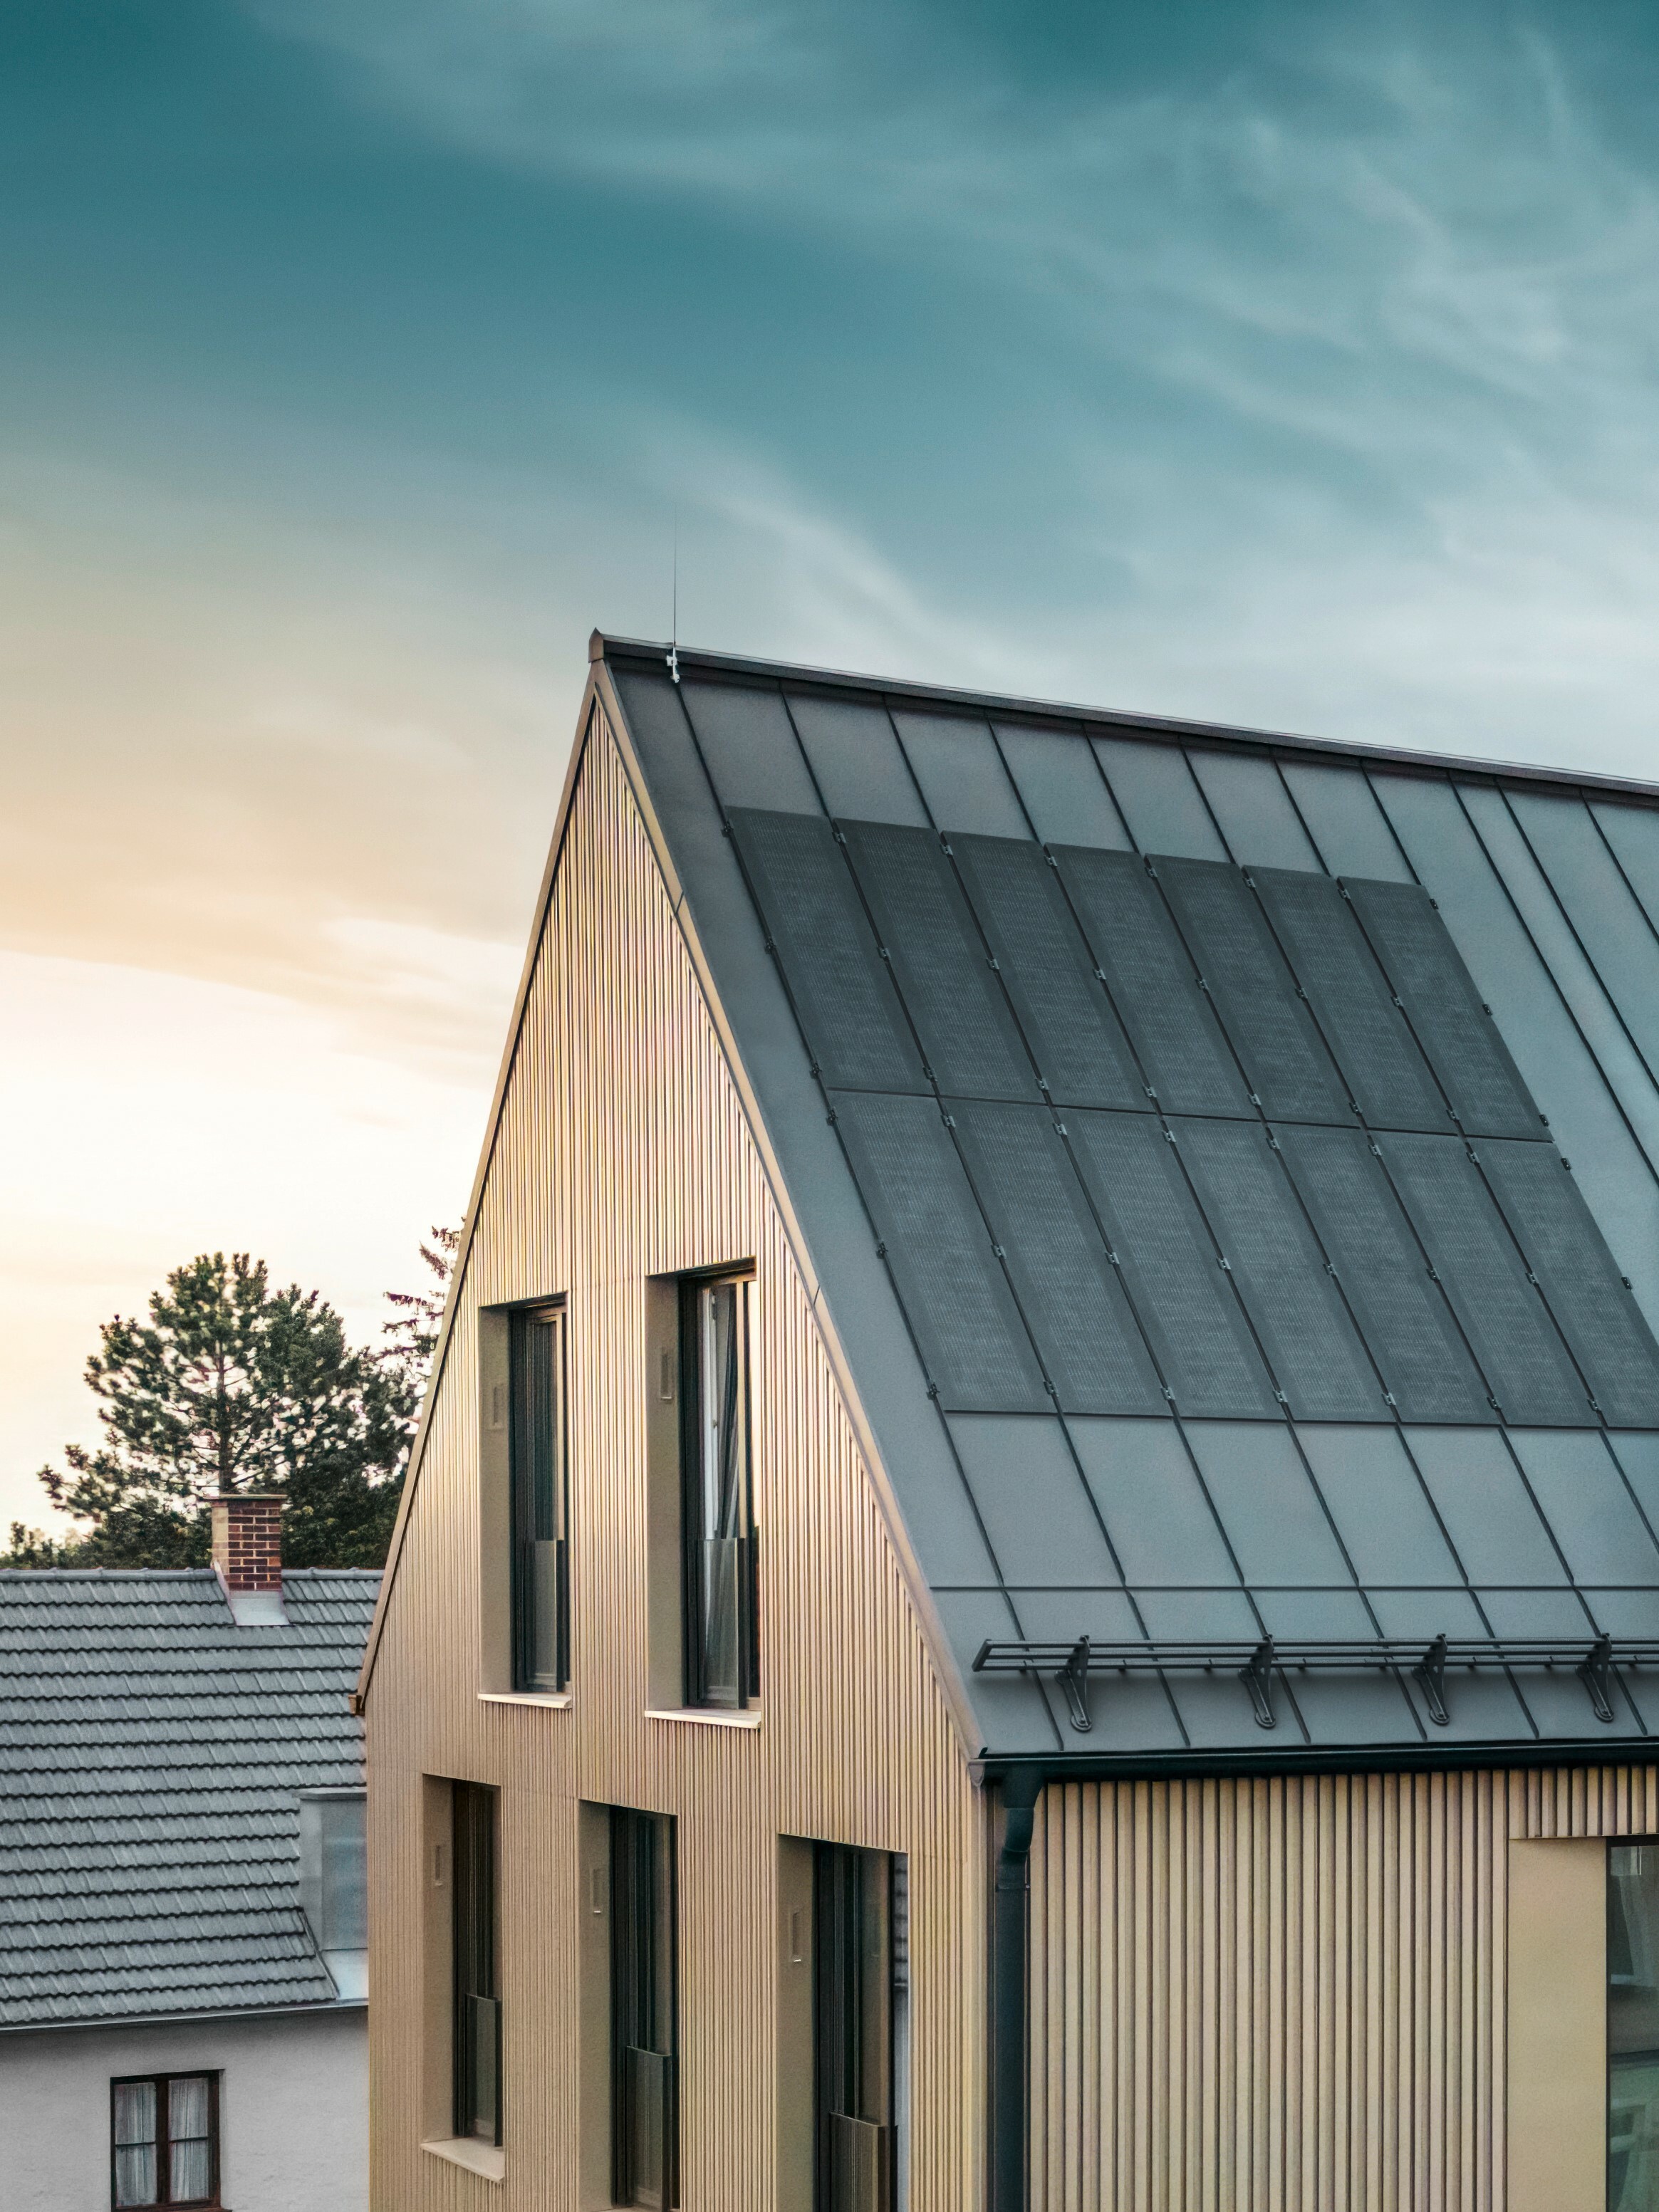 Zu sehen ist ein Gebäude mit bronzener PREFALZ Fassade. Die innovativen PREFALZ Solarmodule mit neuester TOPCon-Zellentechnologie auf dem schwarzgrauen PREFALZ Dach sorgen für eine nachhaltige Energiegewinnung.